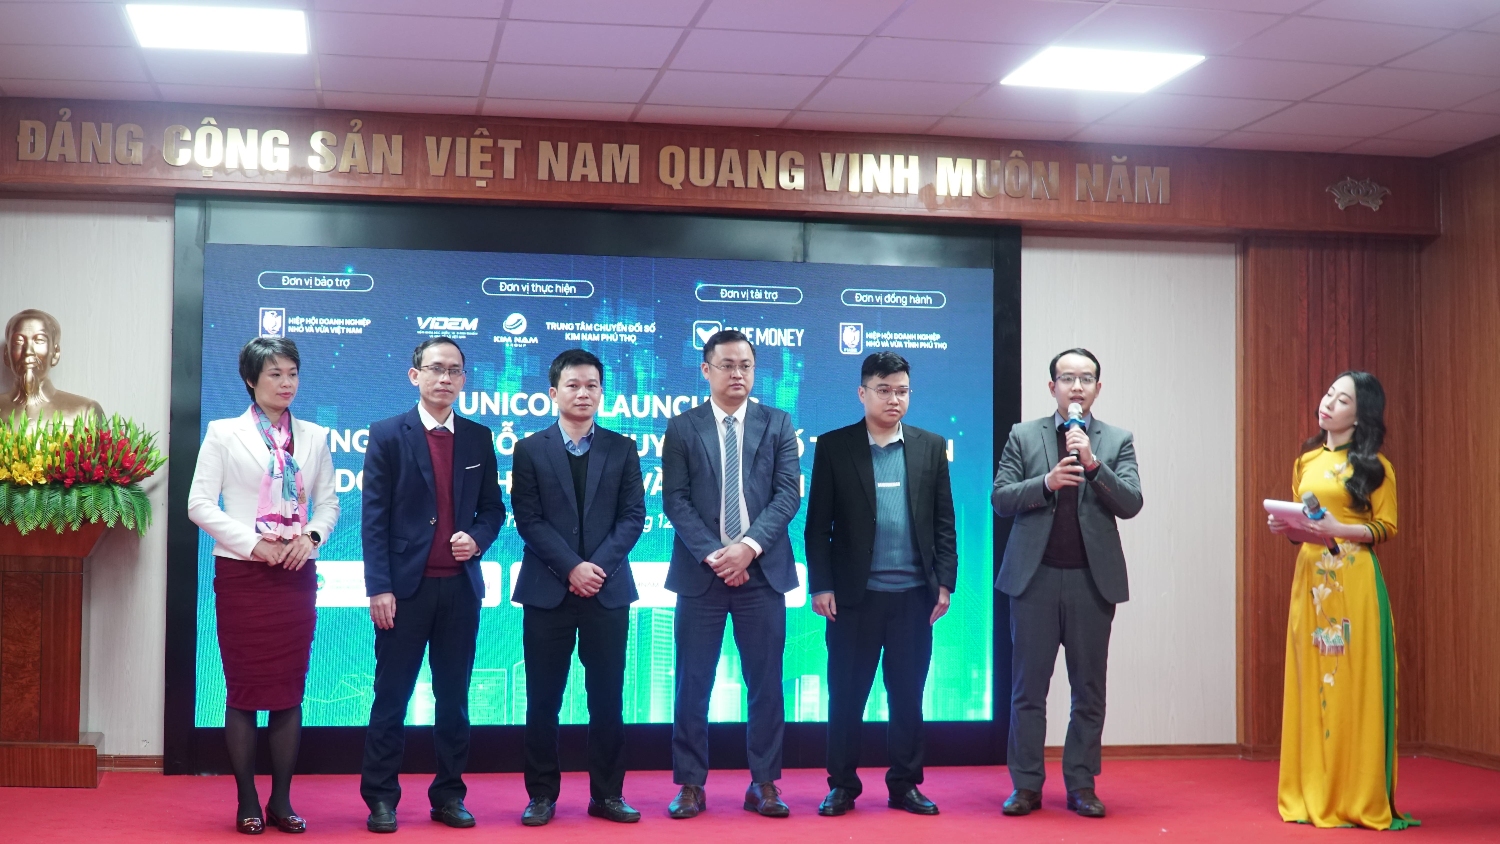 Đội ngũ chuyên gia "Unicorn Launching" ra mắt cộng đồng doanh nghiệp Phú Thọ